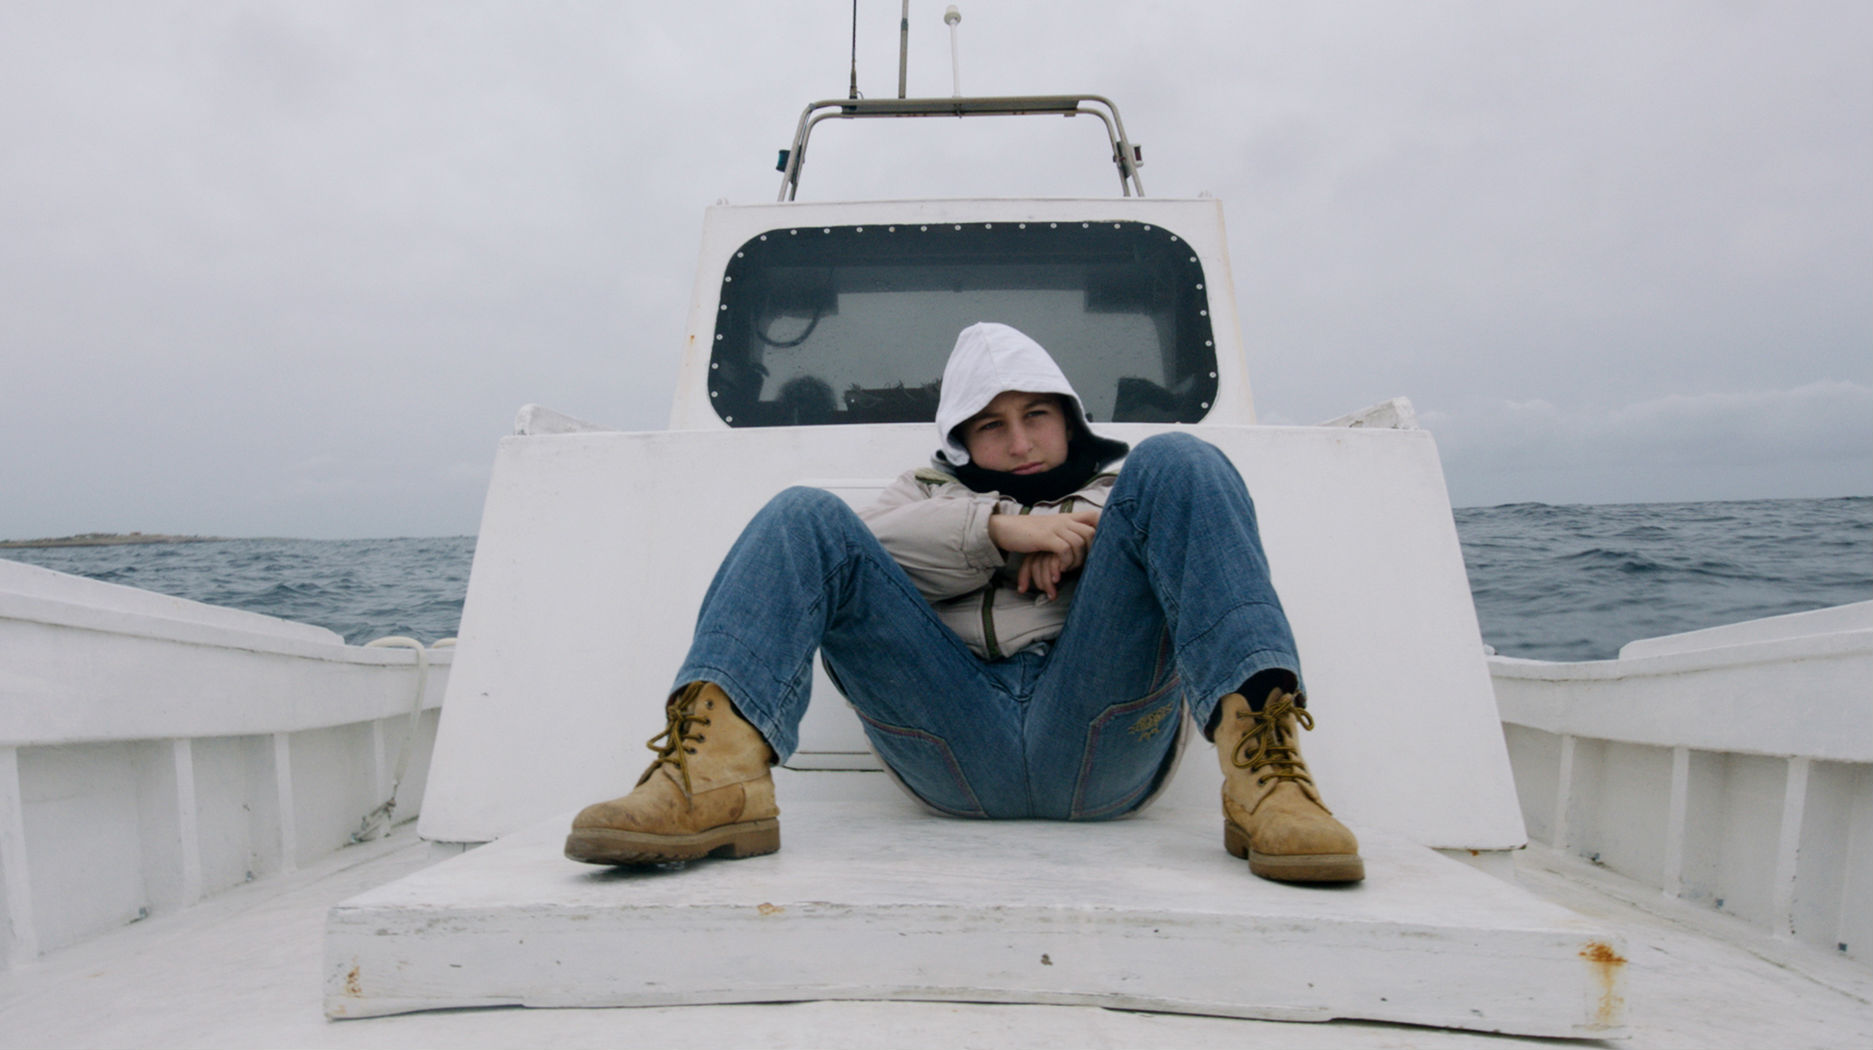 “Φωτιά στη θάλασσα”: Ο Ρόζι παρουσιάζει το βραβευμένο ντοκιμαντέρ του για τους πρόσφυγες στη Στέγη